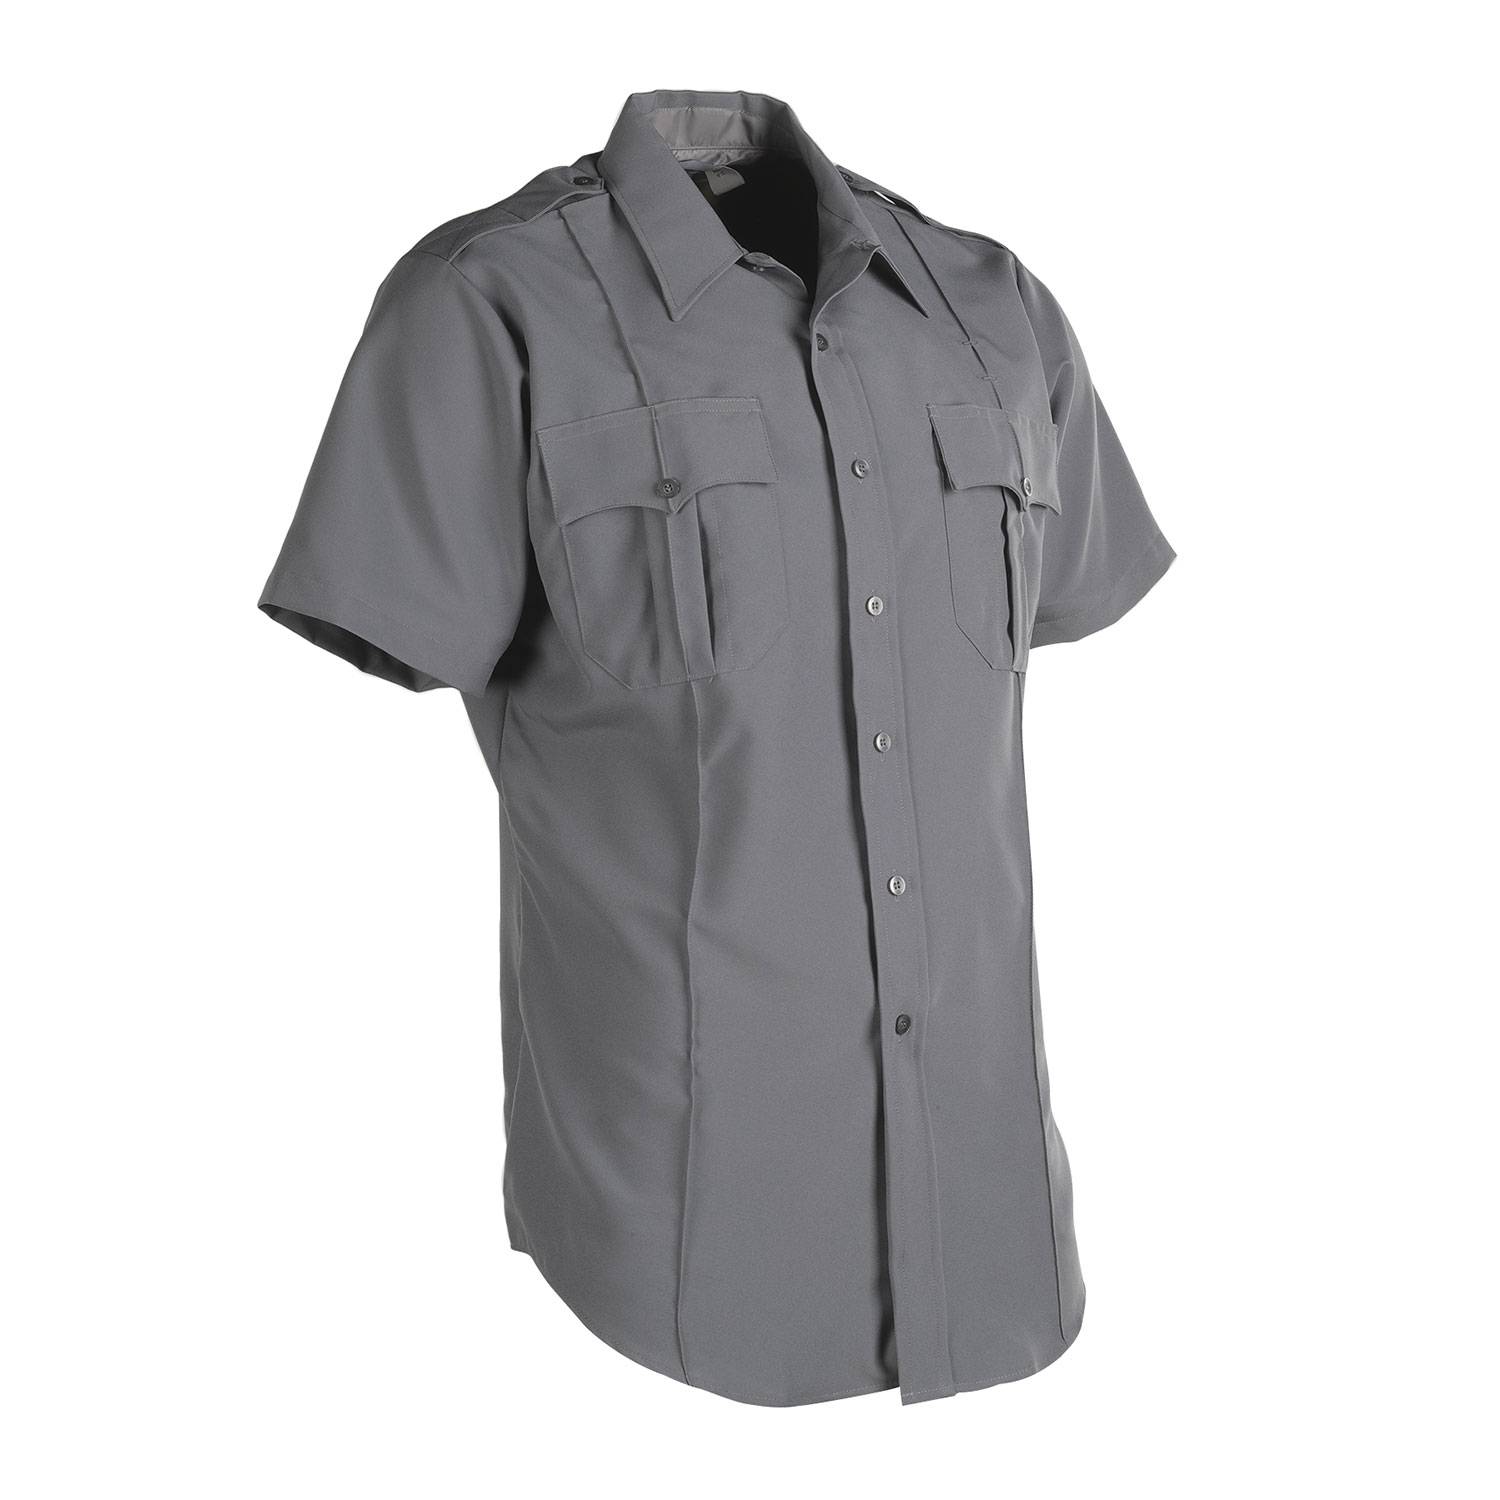 Leventhal Men's Class A Zippered Uniform Shirt